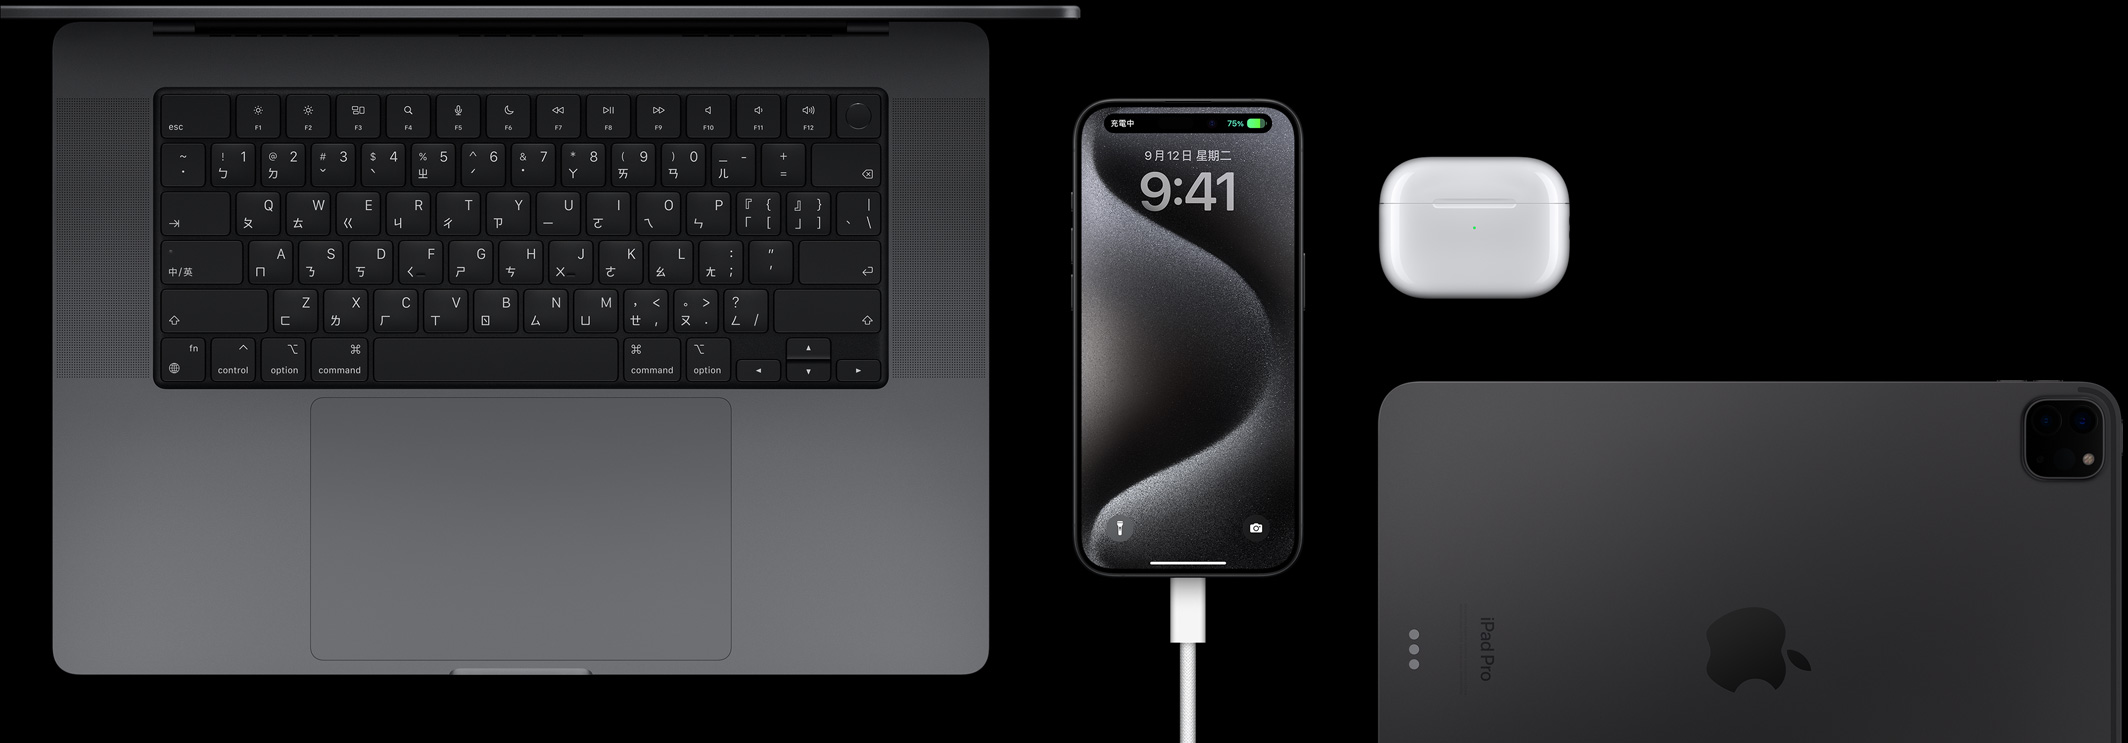 插著 USB-C 連接線的 iPhone 15 Pro，周圍有 Macbook Pro、AirPods Pro 和 iPad。